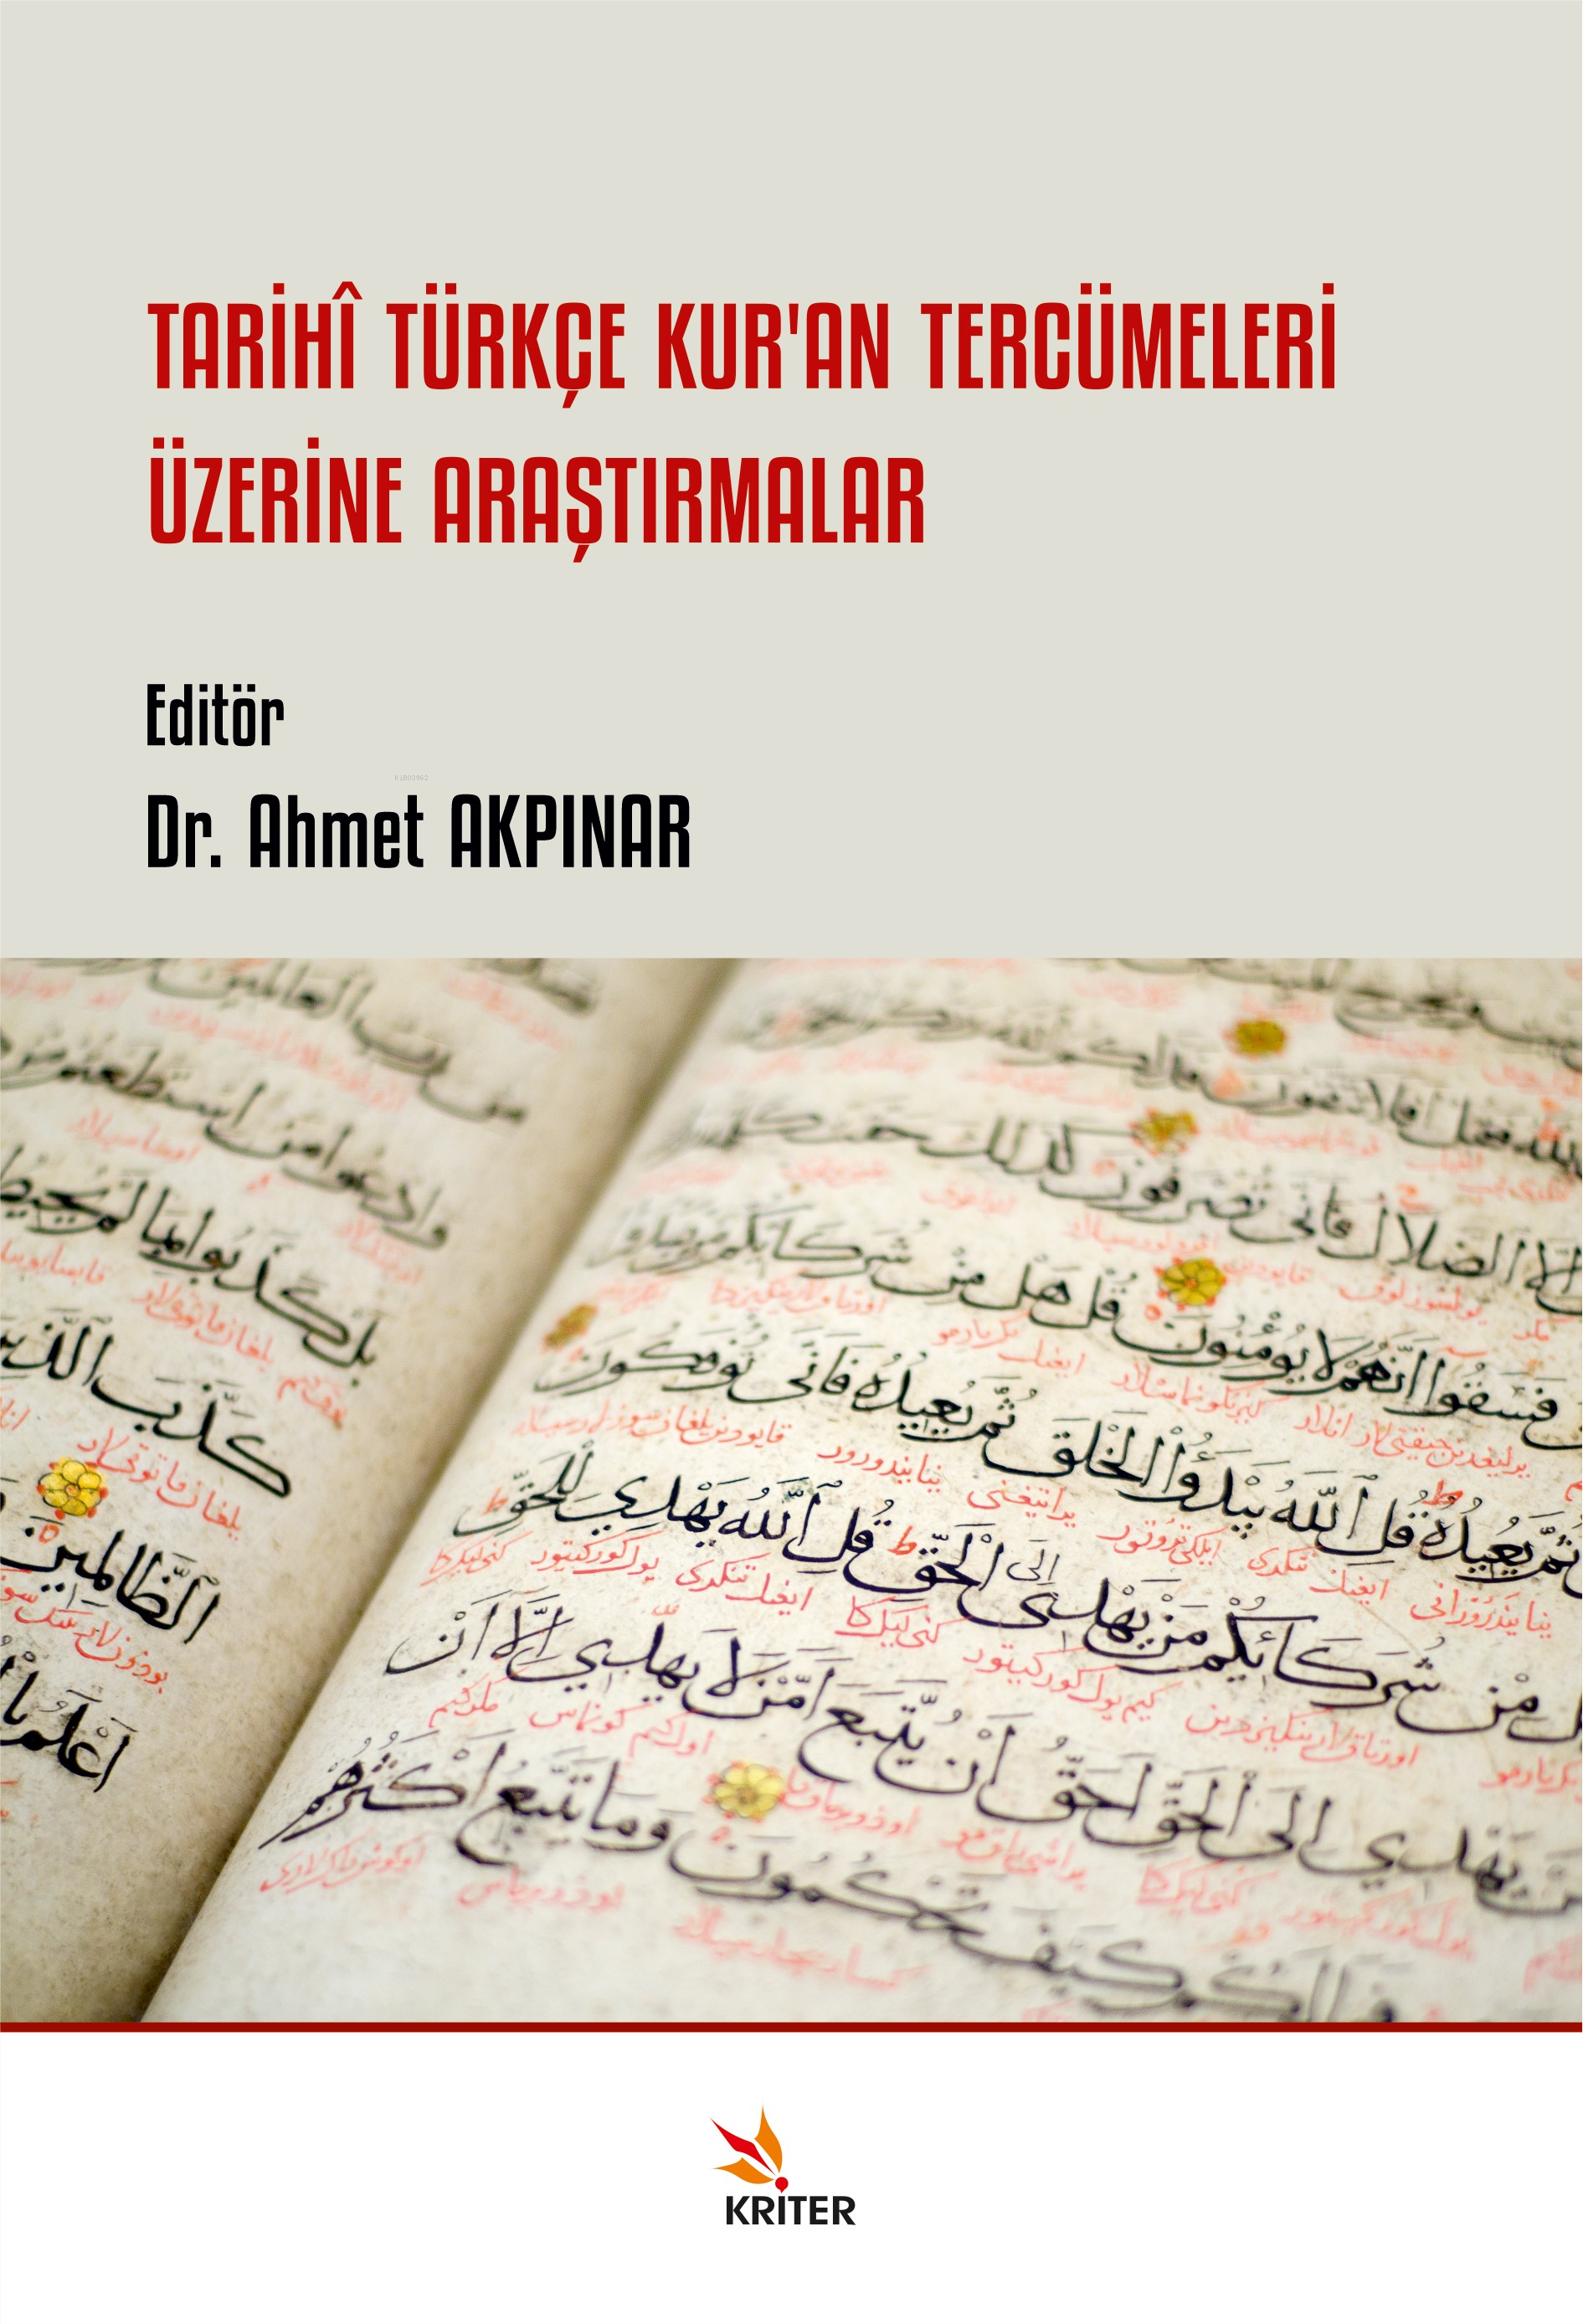 Tarihî Türkçe Kur’an Tercümeleri Üzerine Araştırmalar